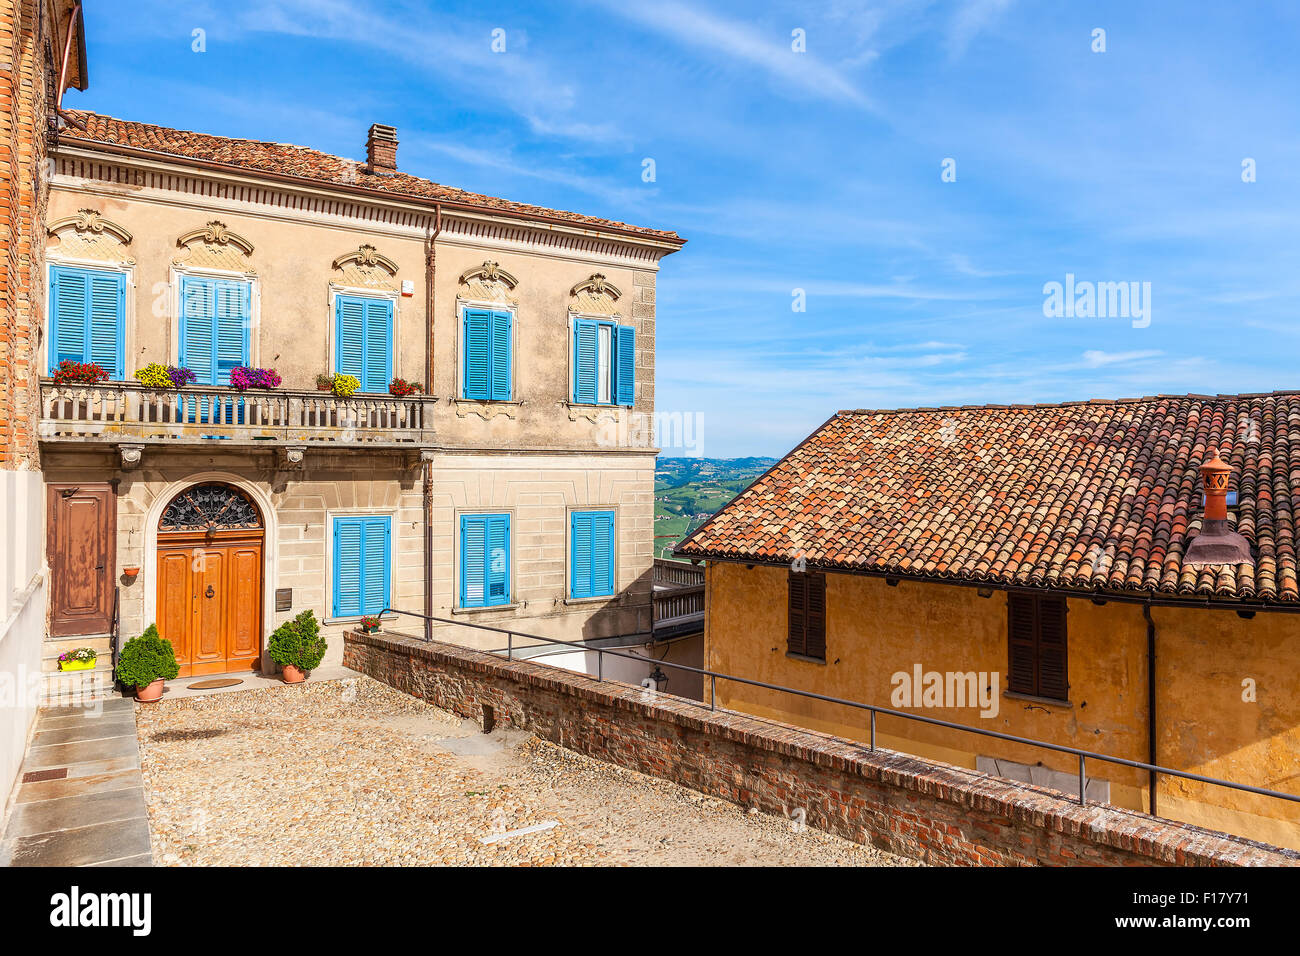 La facciata della casa colorati con persiane di legno sotto il cielo blu nella piccola città italiana in Piemonte, Italia settentrionale. Foto Stock